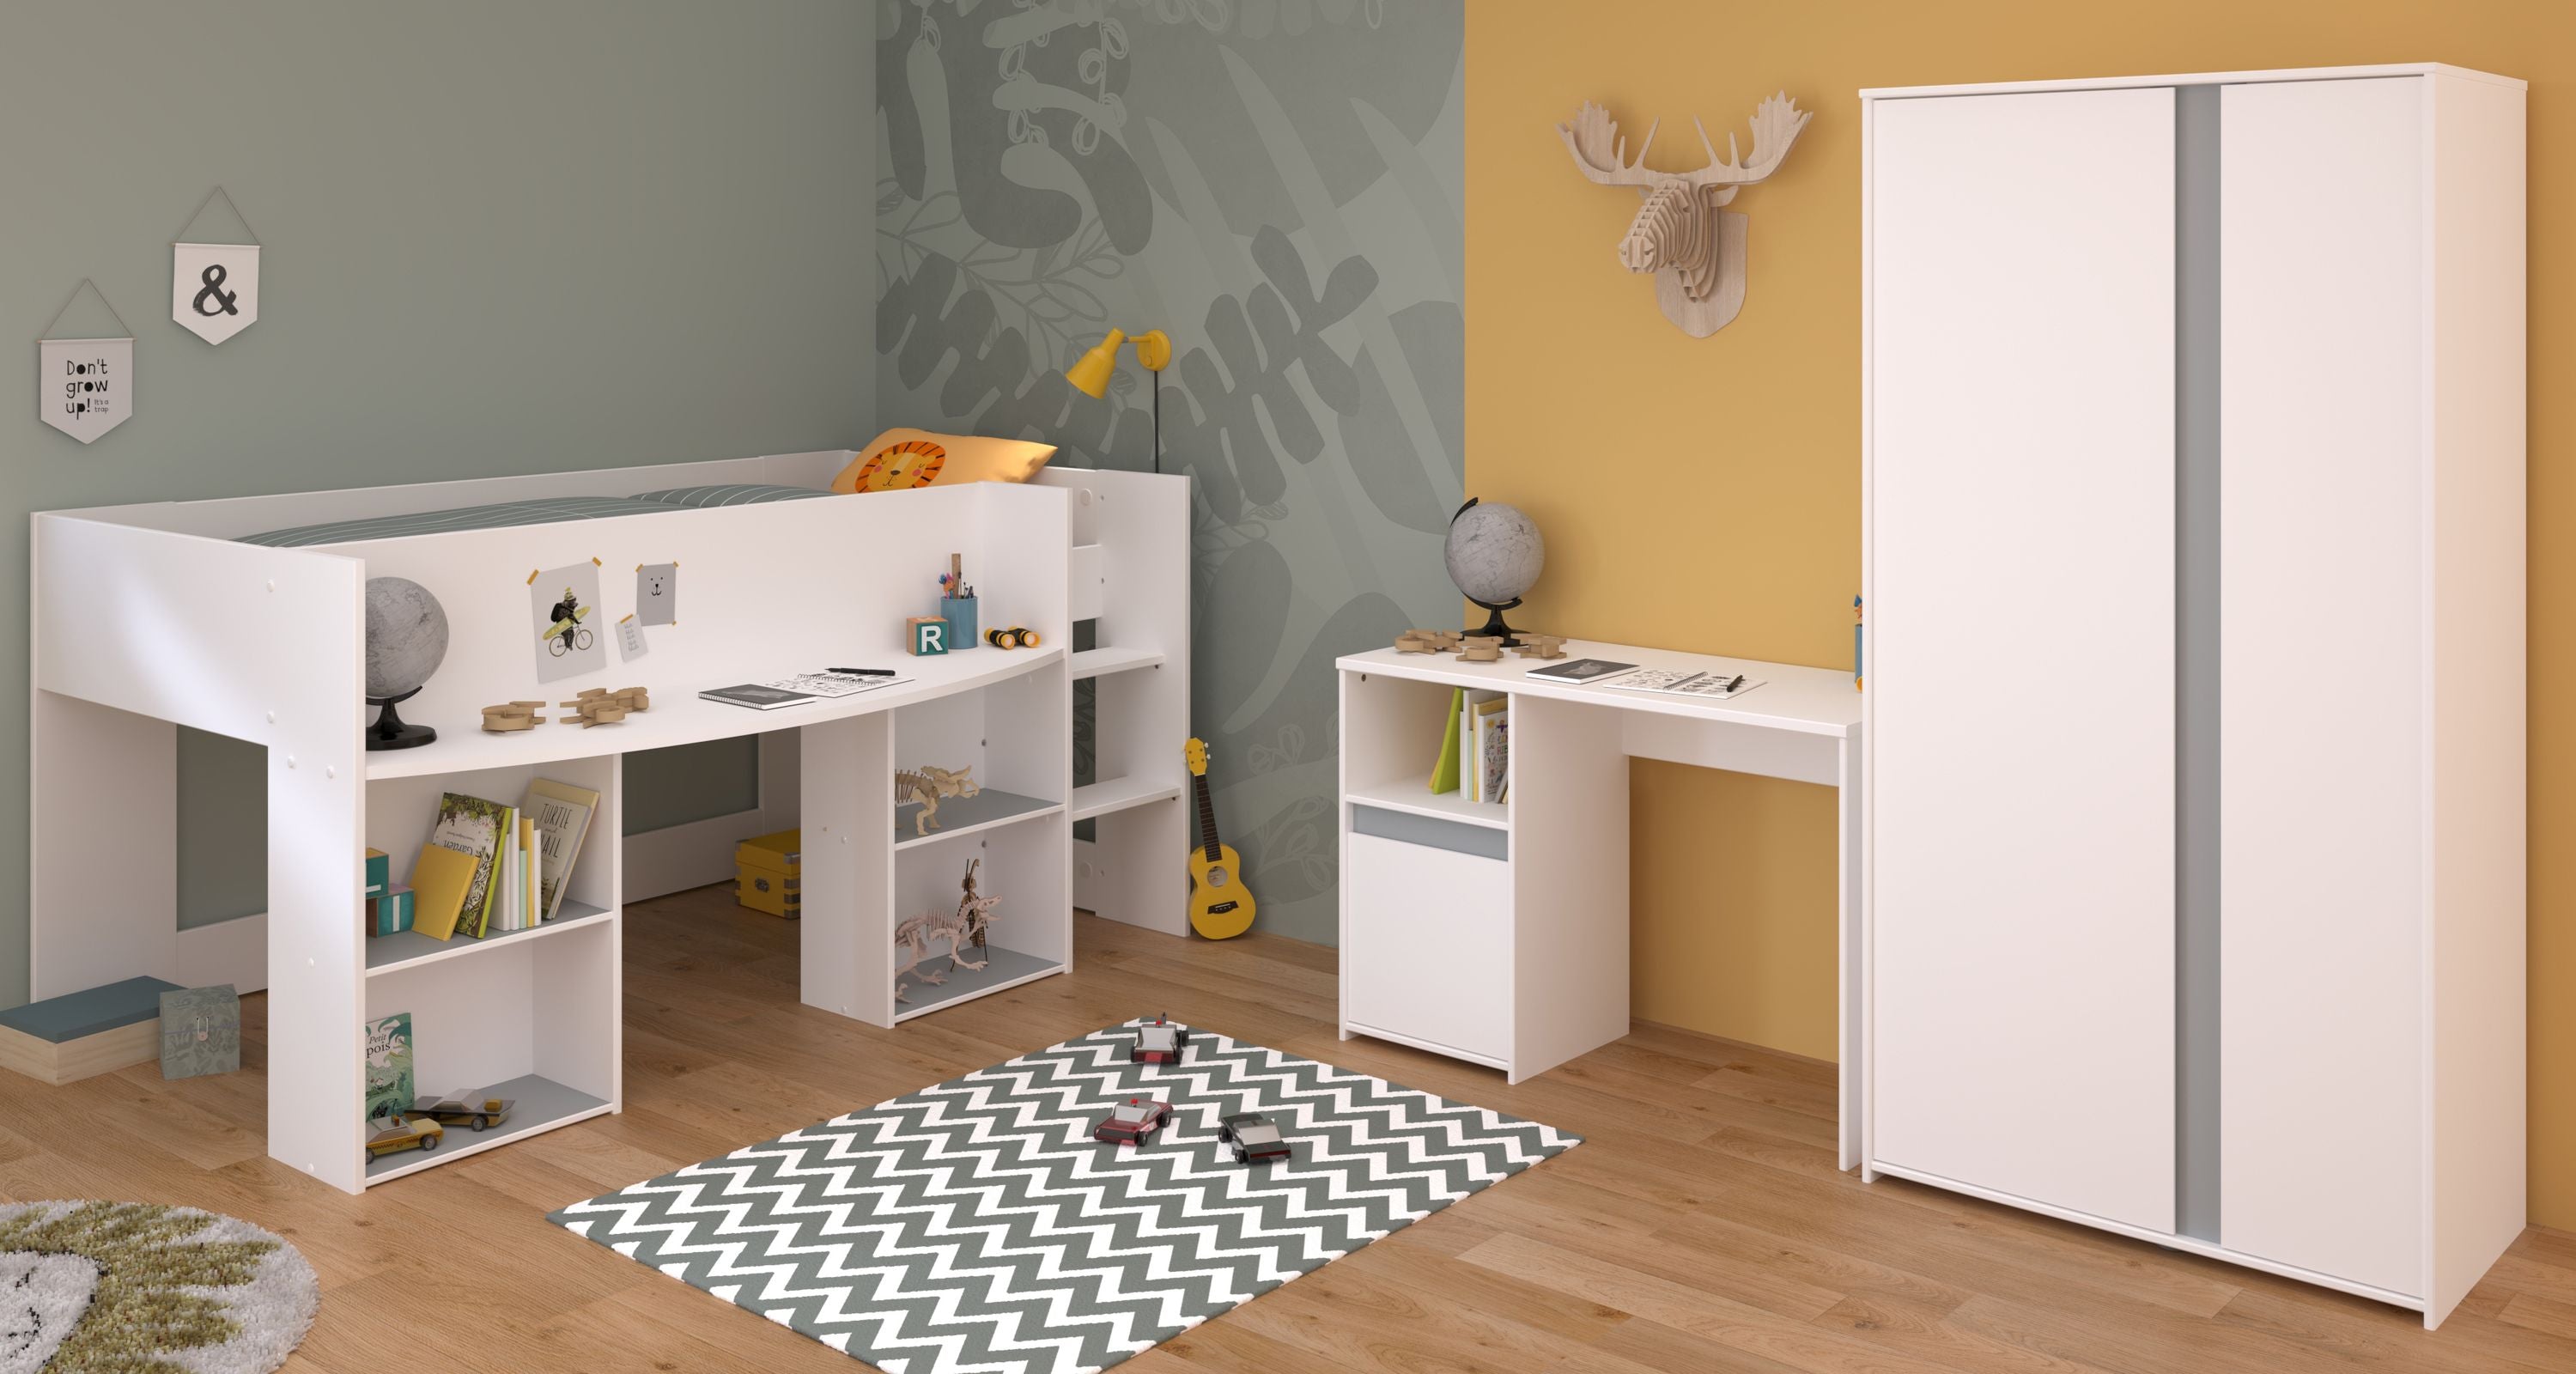 Kinderzimmer Pirouette 13 Parisot 3-tlg Hochbett 90*200 cm + Kleiderschrank + Schreibtisch weiß